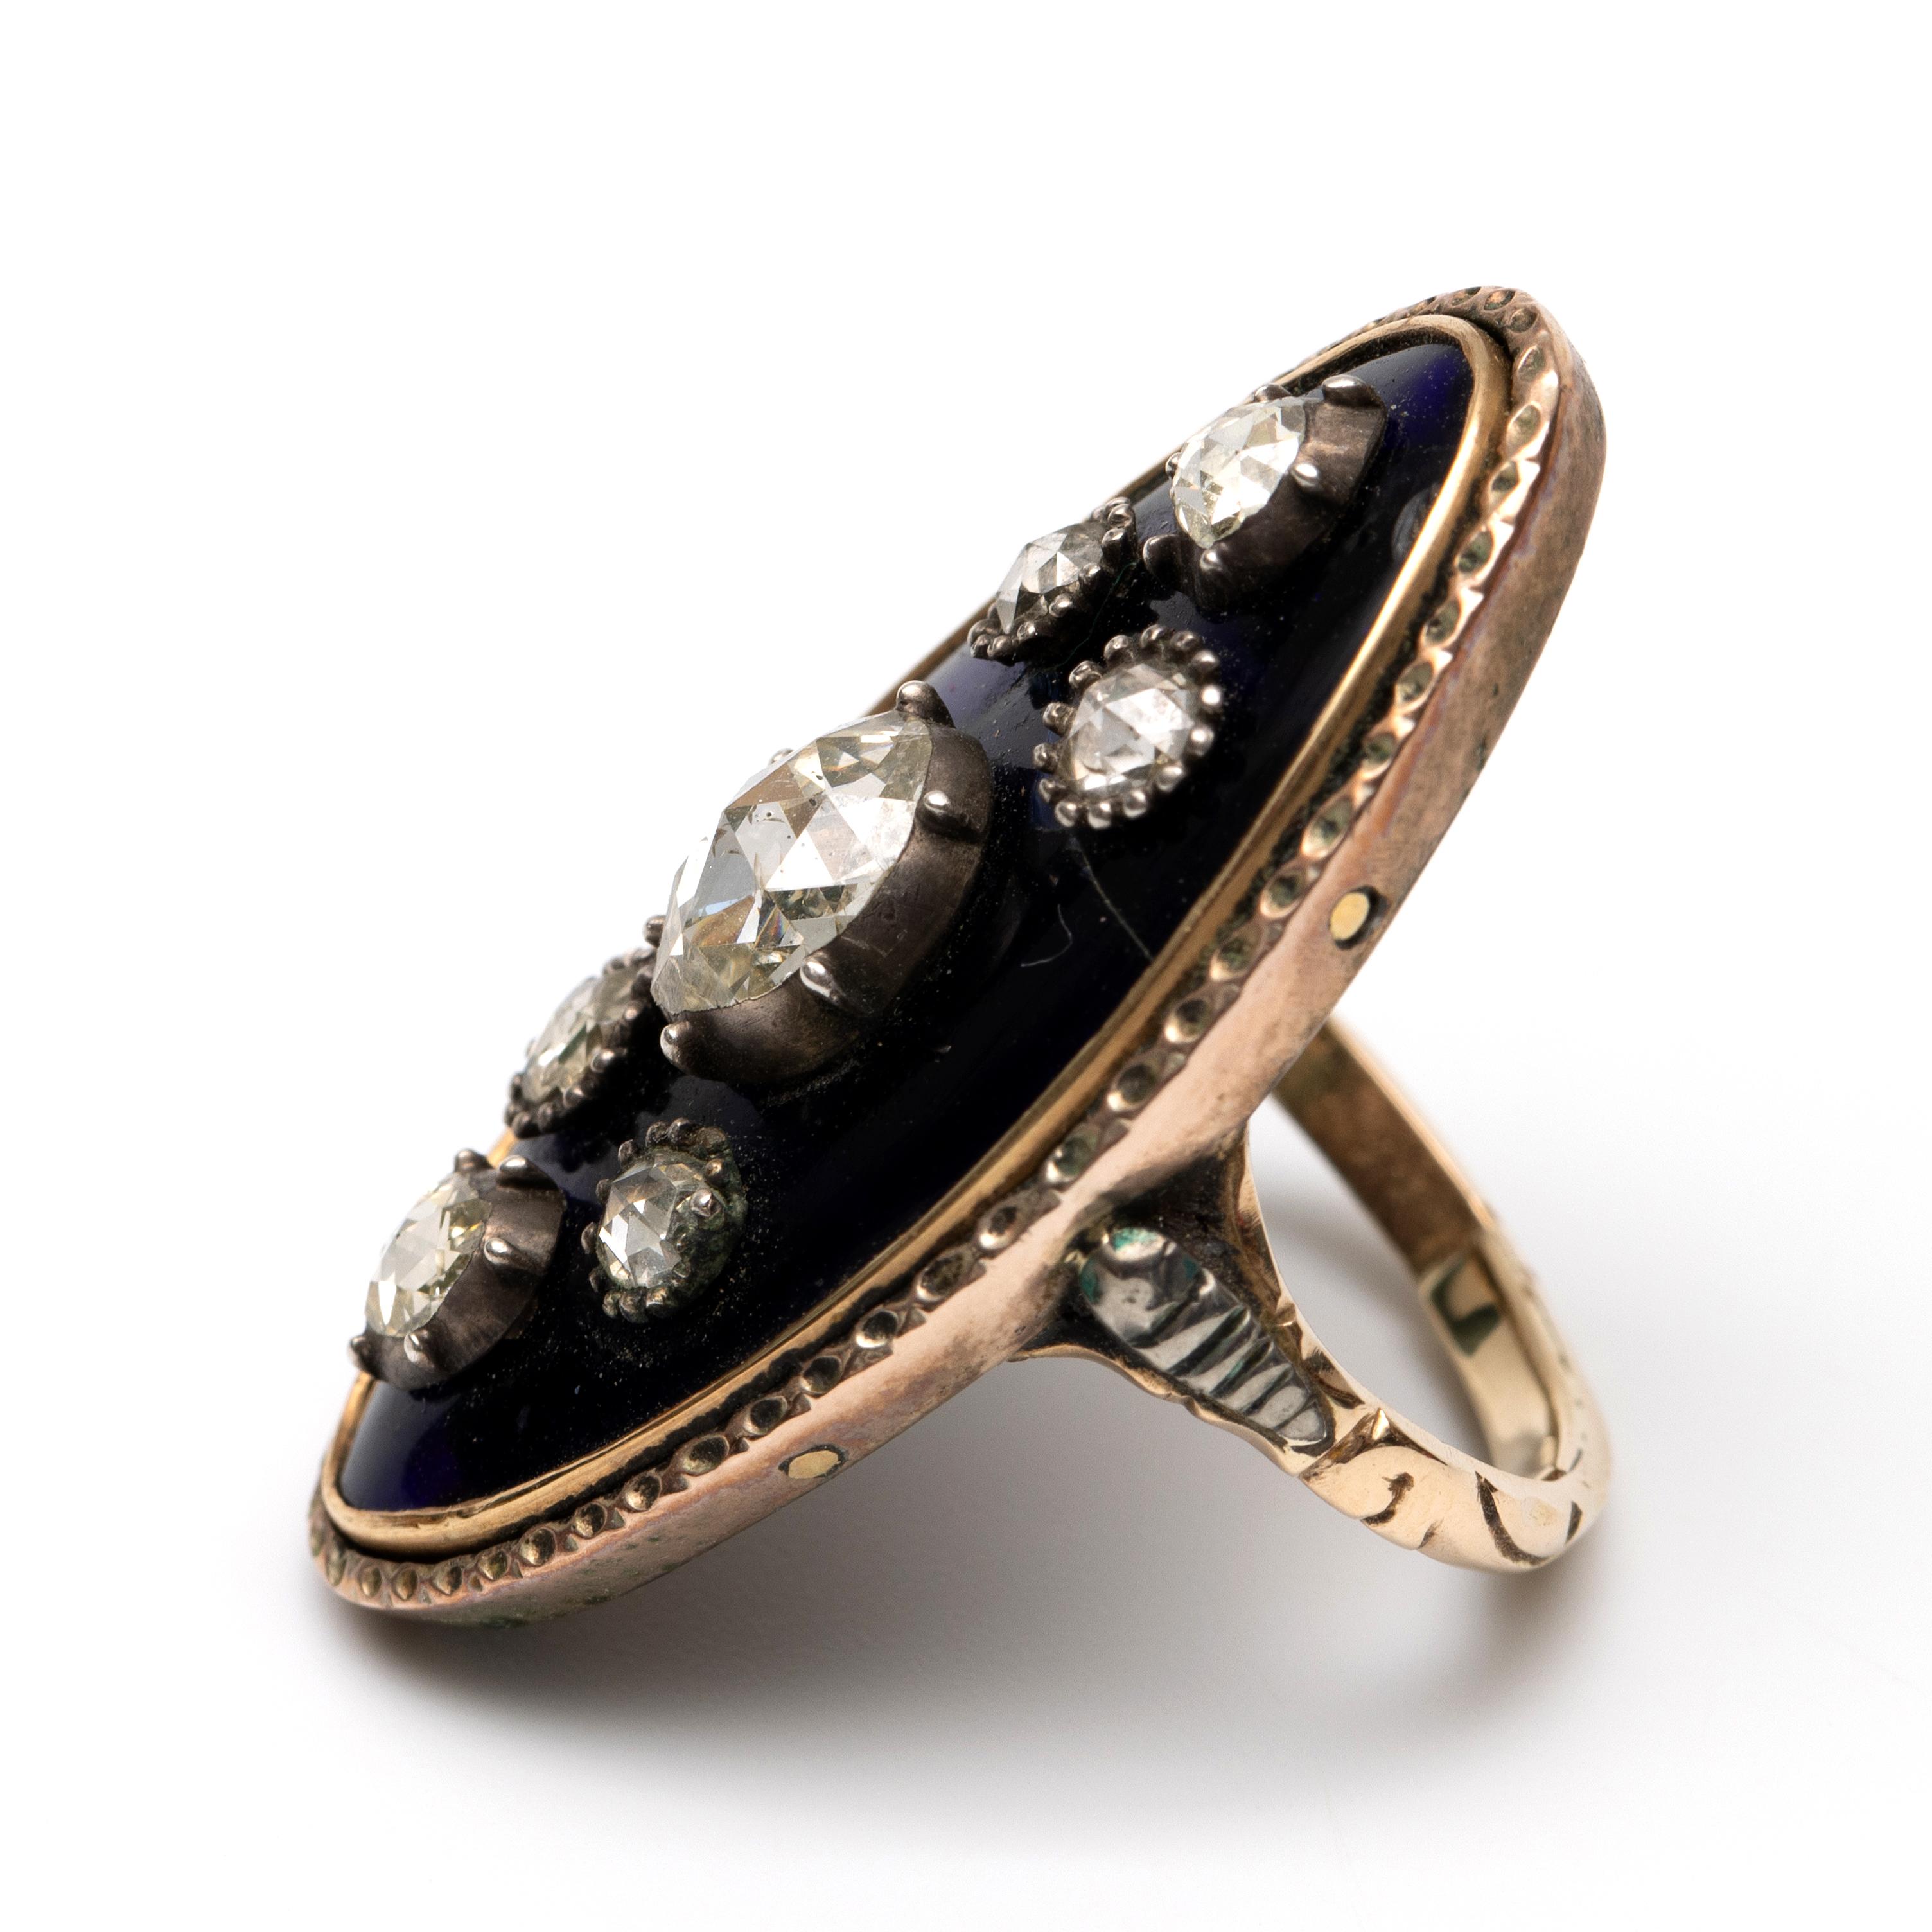 Beneden wettelijk gehalte gouden firmament ring, ca. 1800, - Image 2 of 3